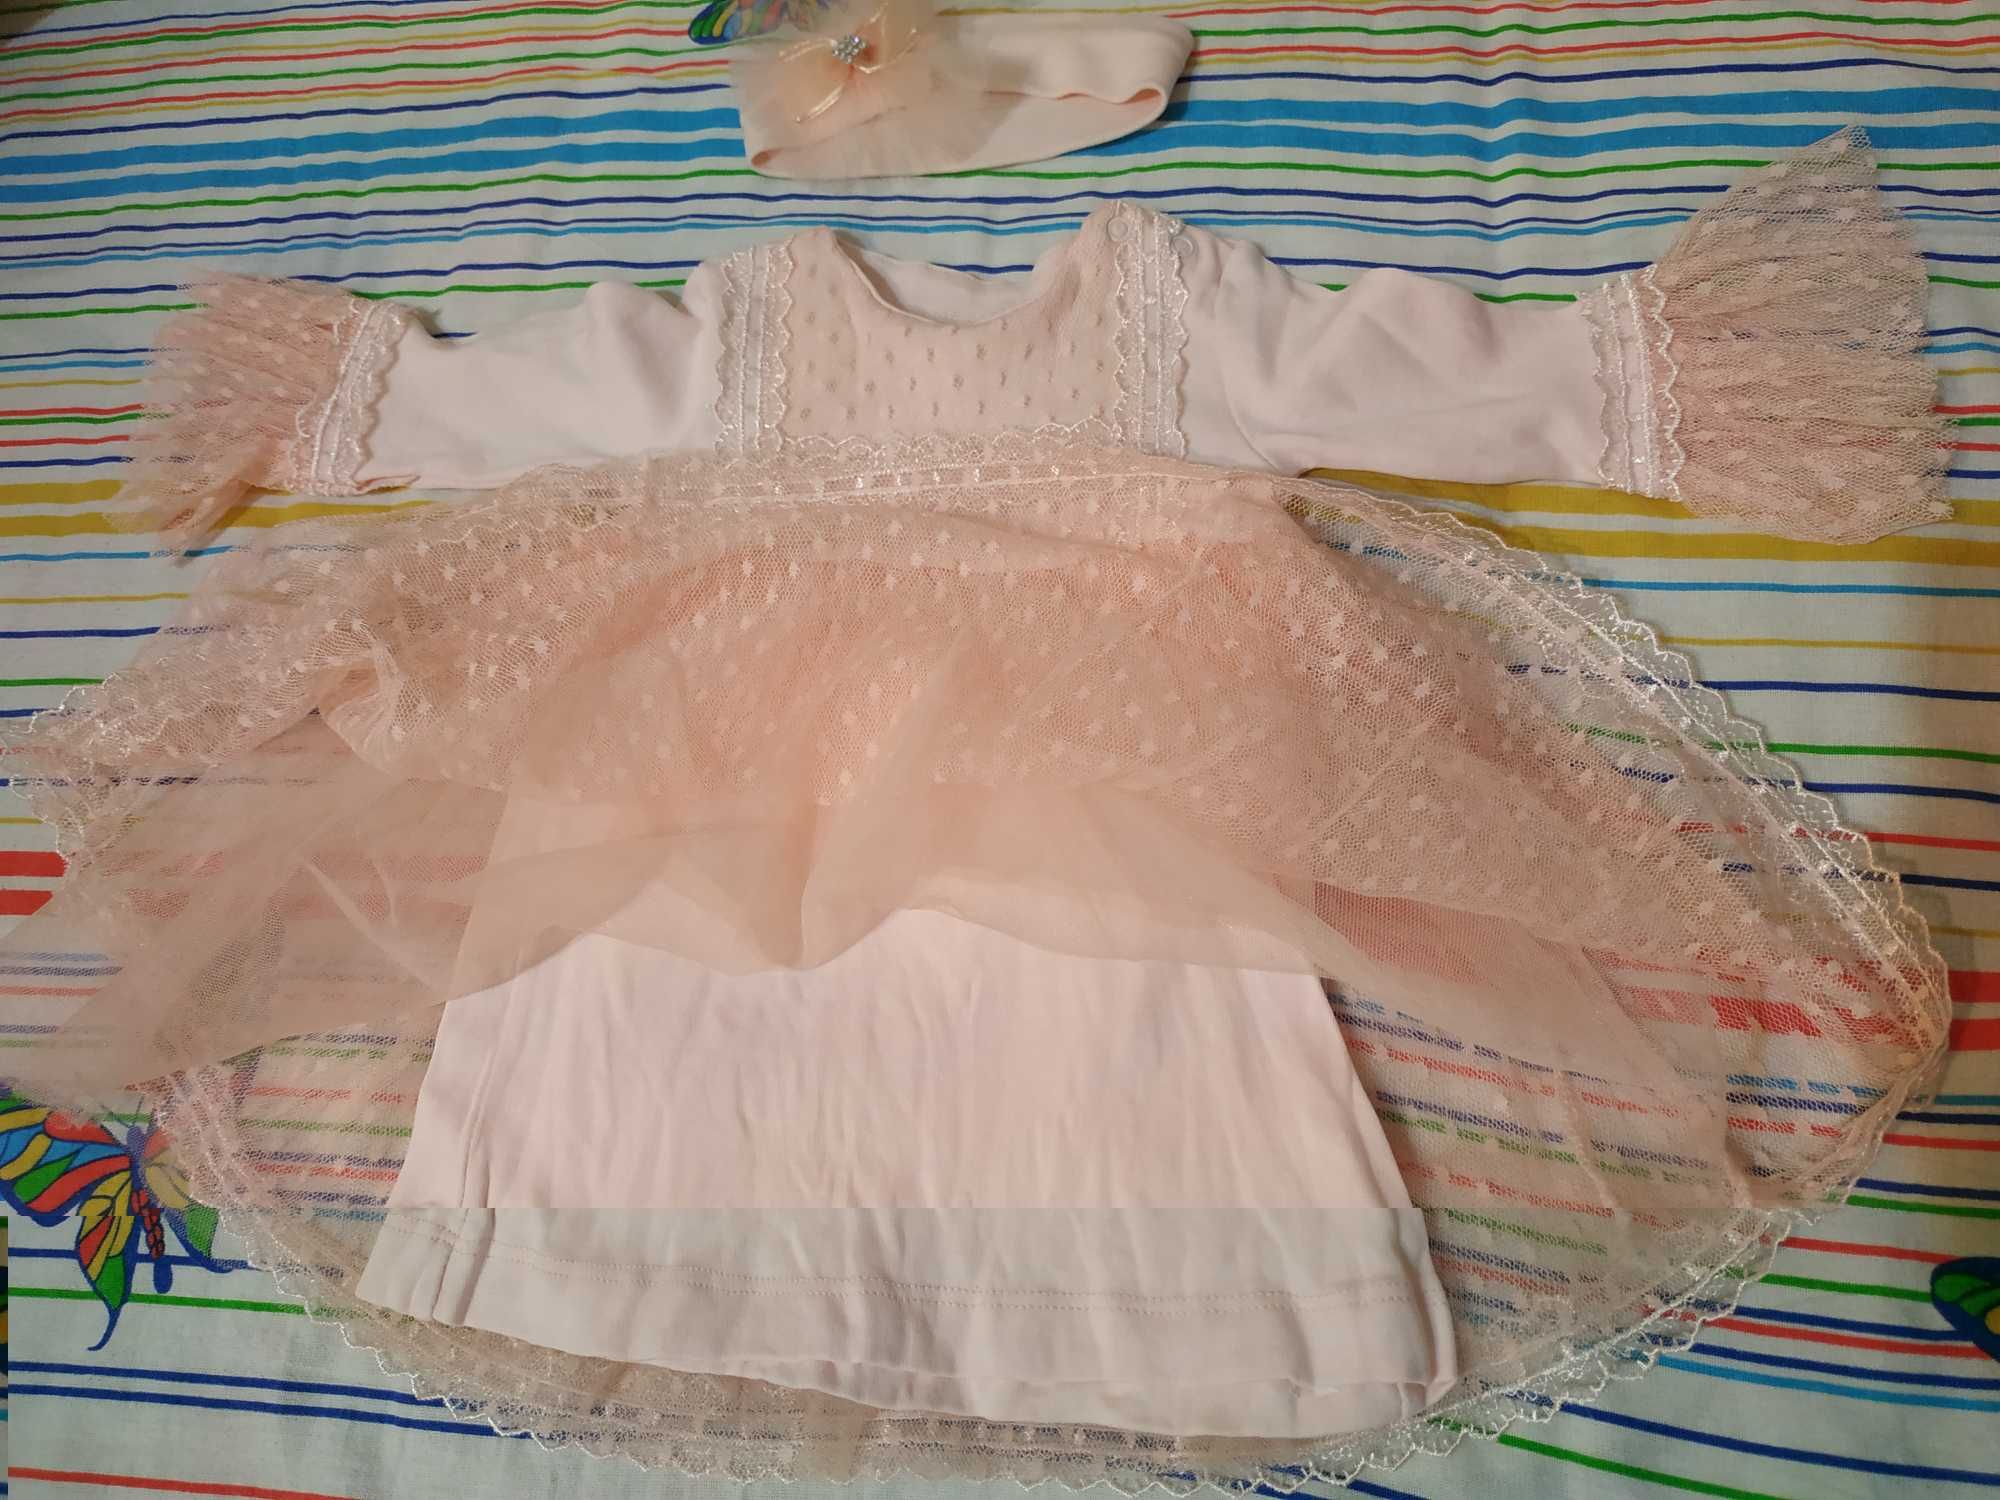 Платье для девочки 4-5 месяцев. Цвет персиковый.